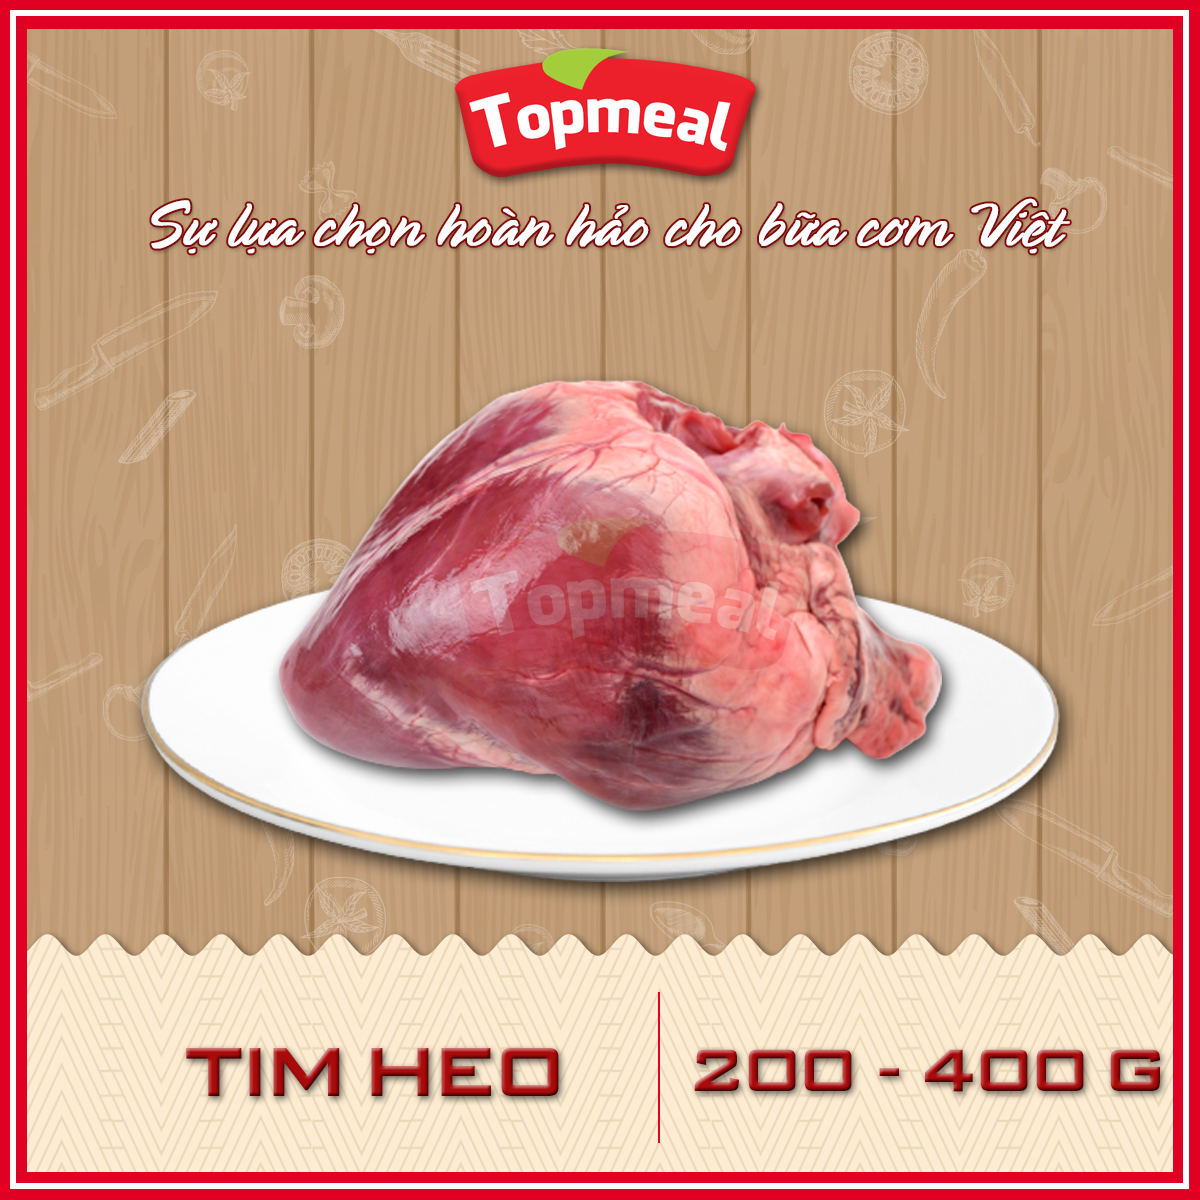 HCM - Tim heo 200-400g - Thích hợp với các món xào rau củ hoặc nấu cháo -